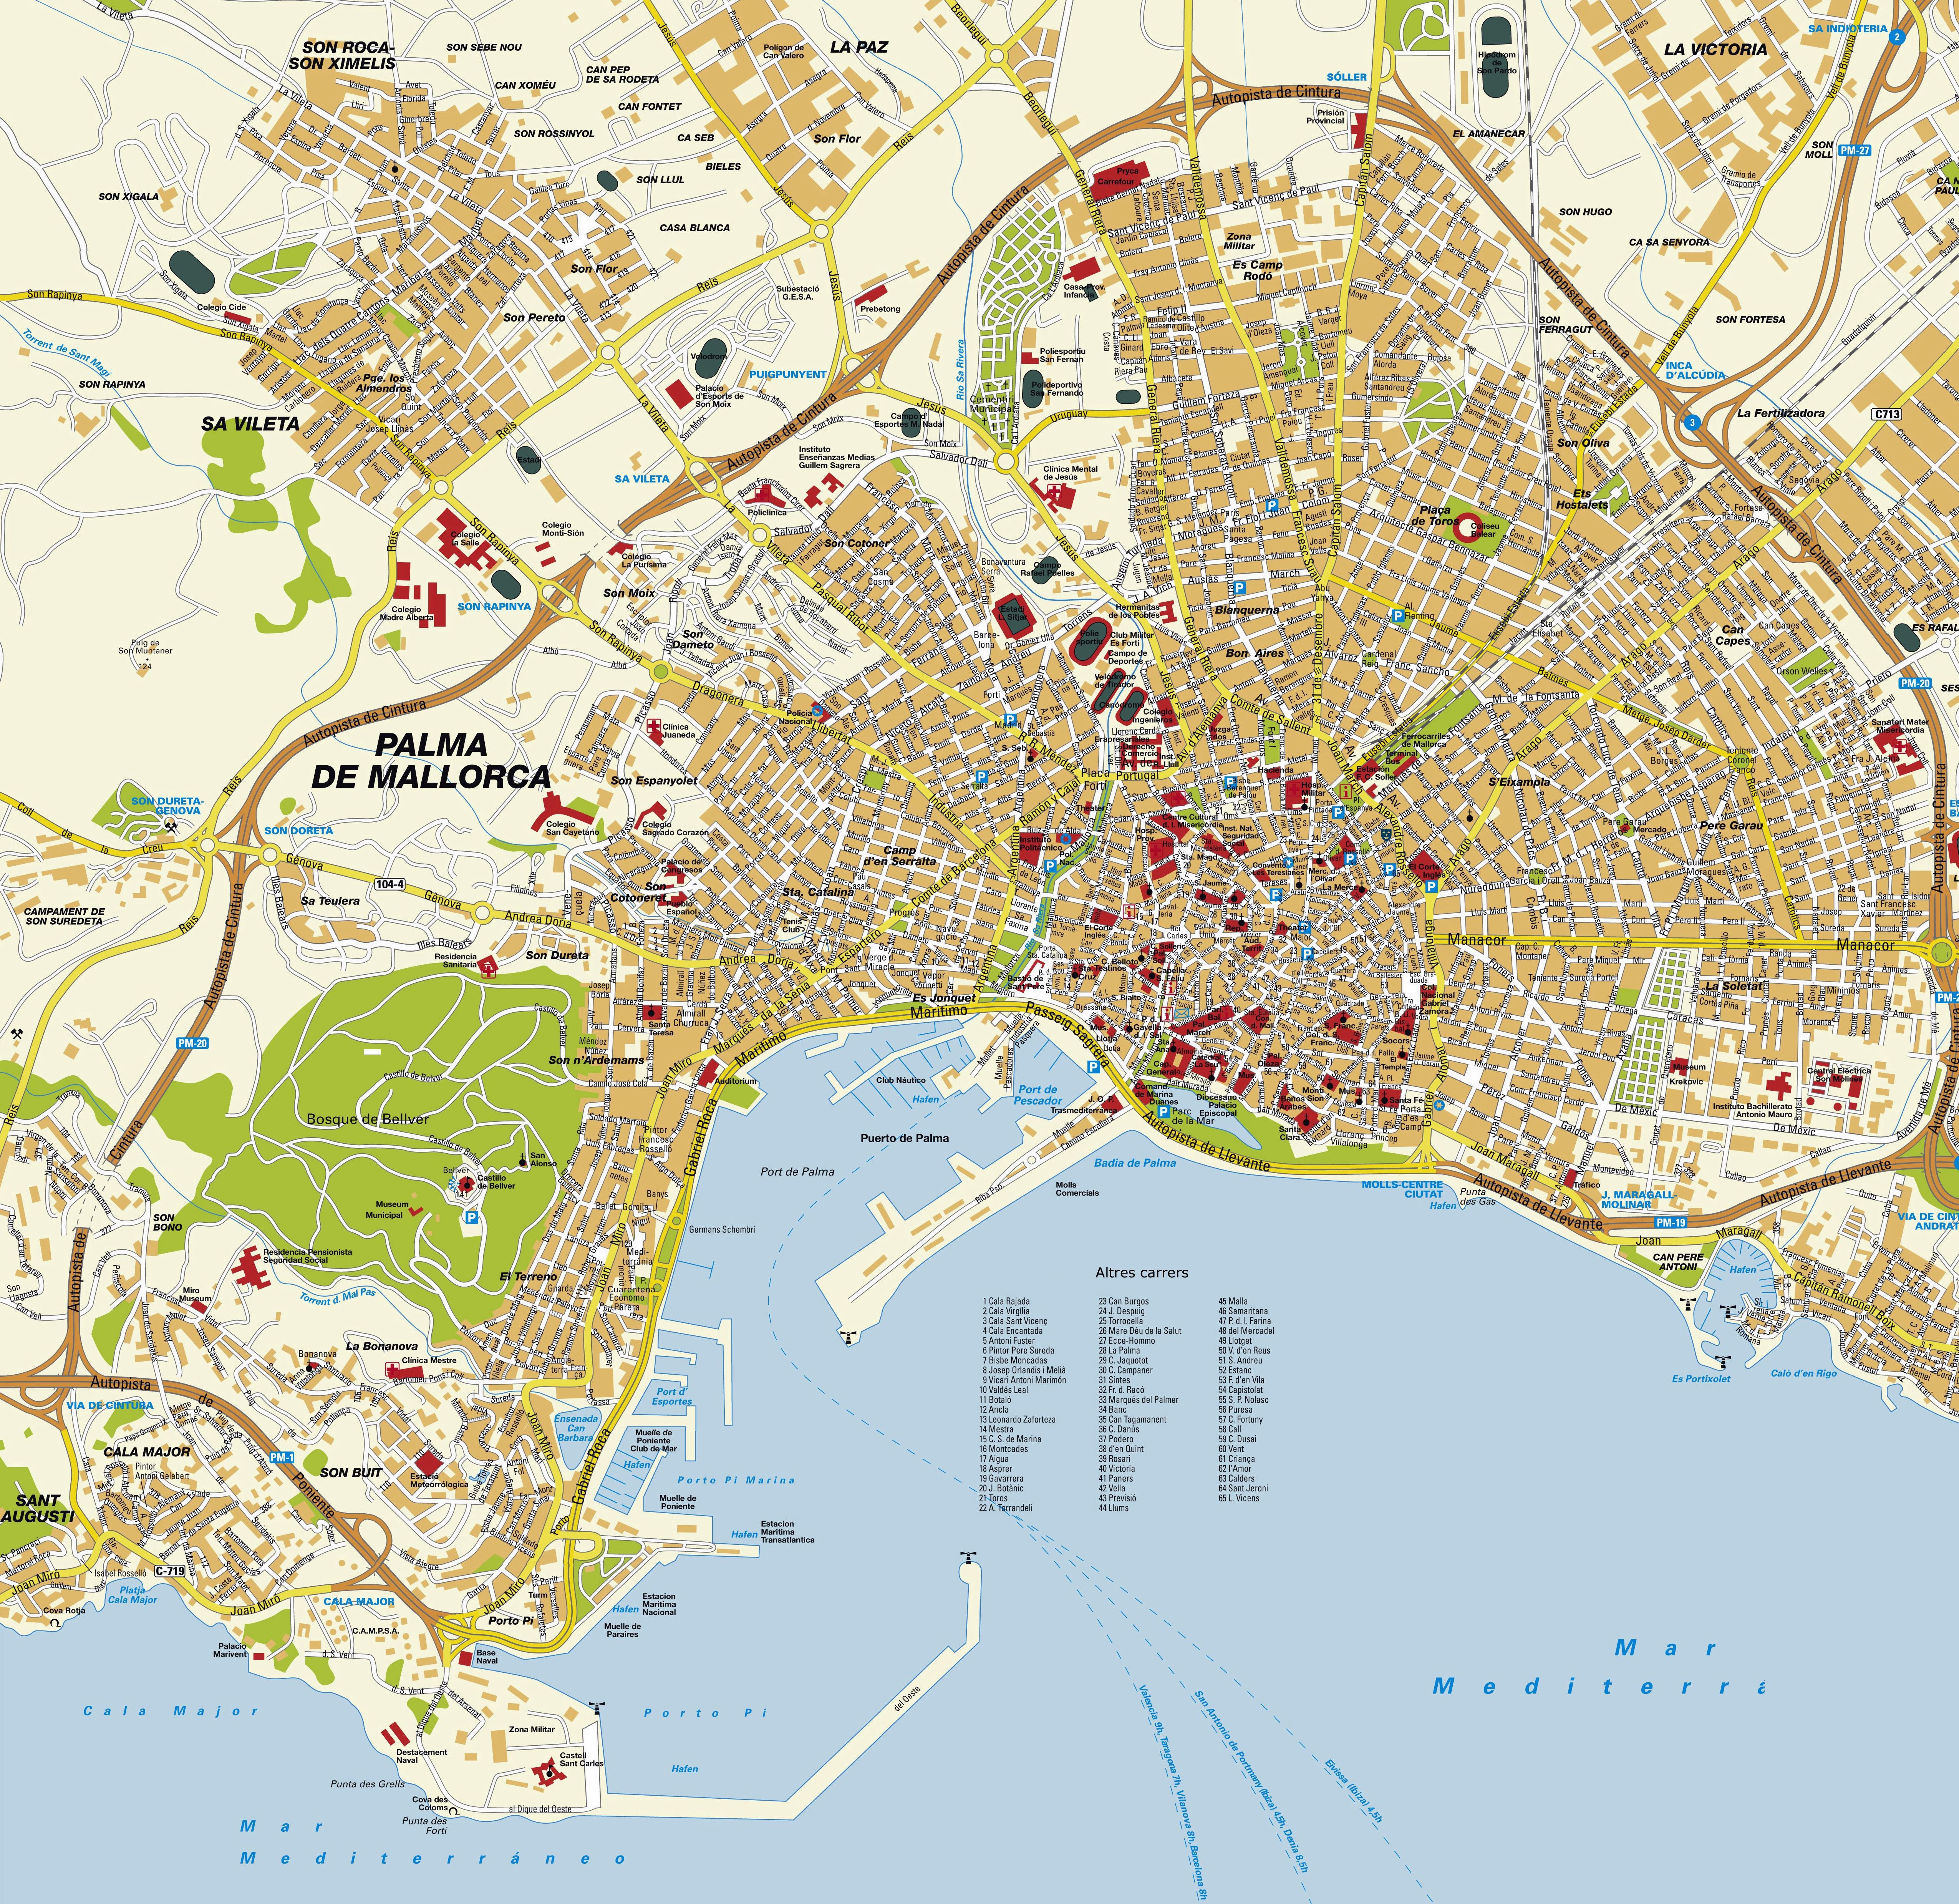 Stadtplan von Palma de Mallorca | Detaillierte gedruckte Karten von